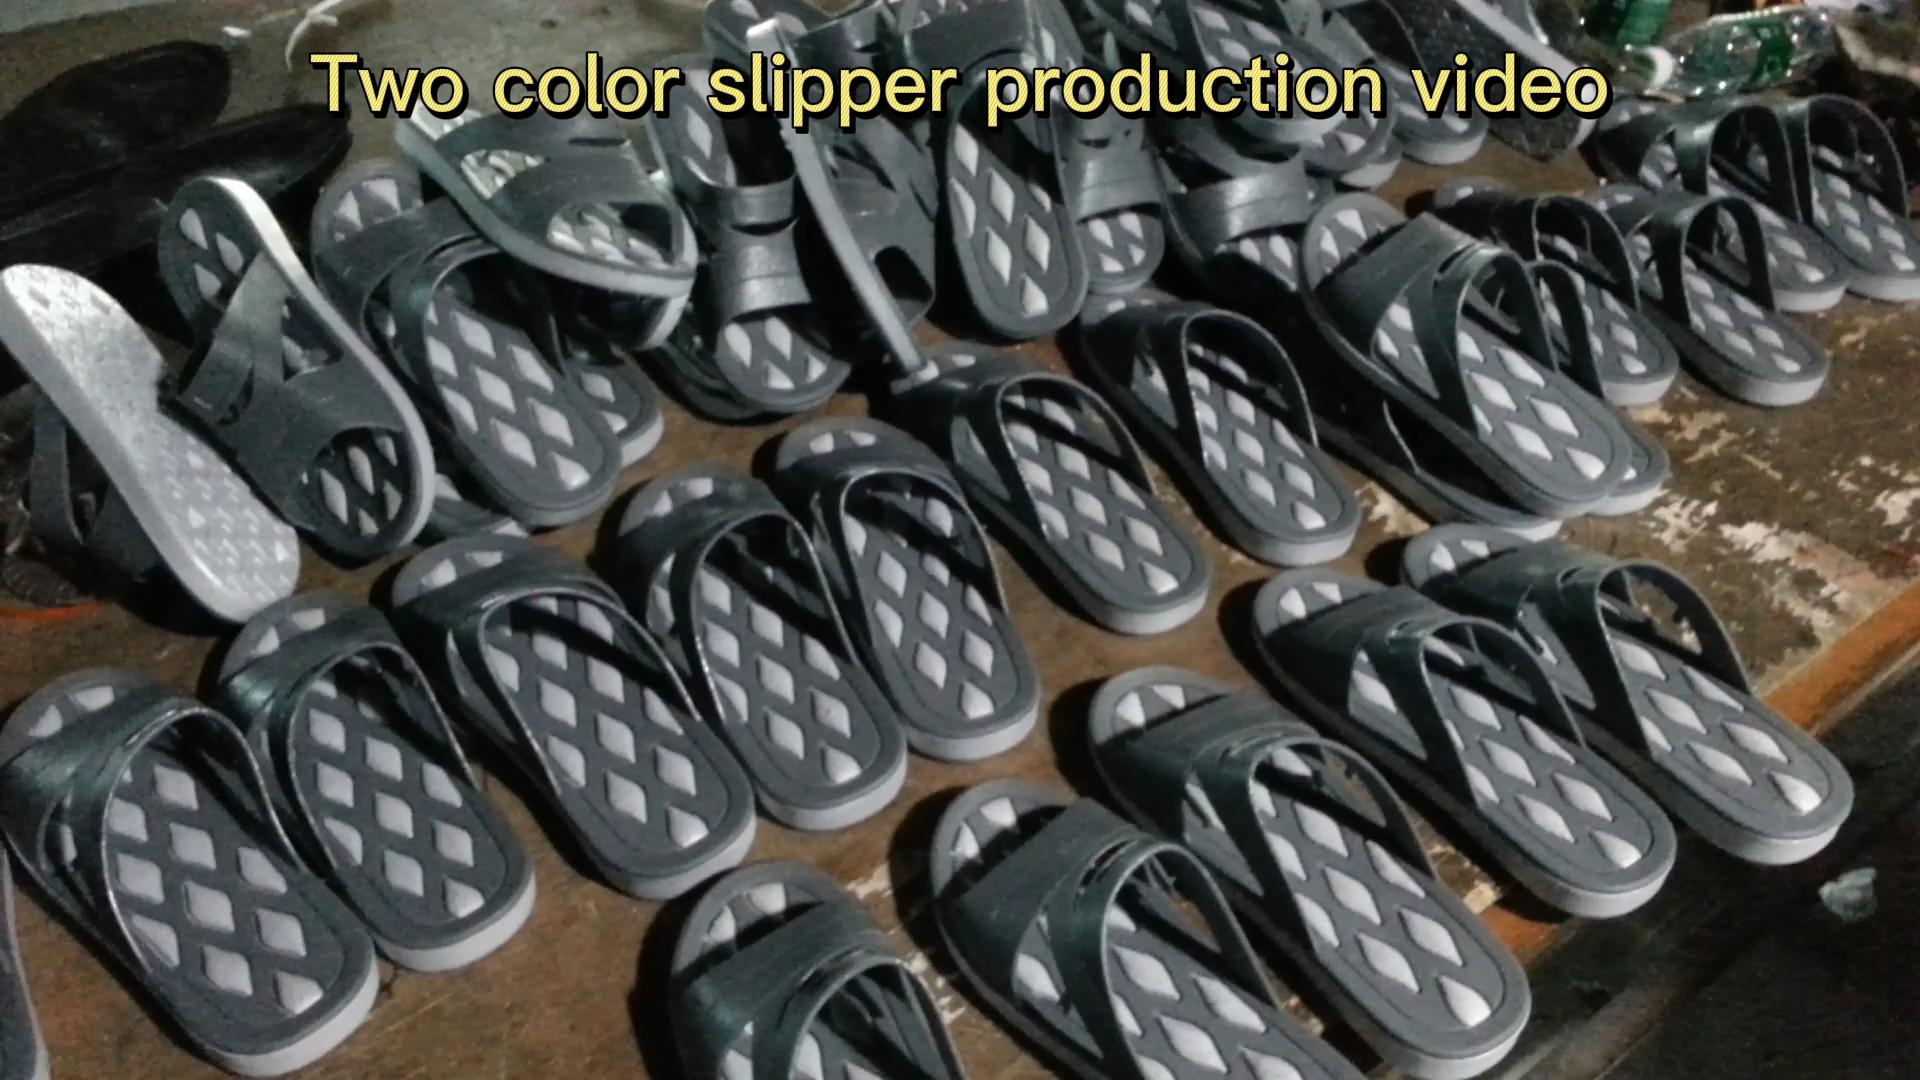 Vidéo de production de pantoufle à deux couleurs